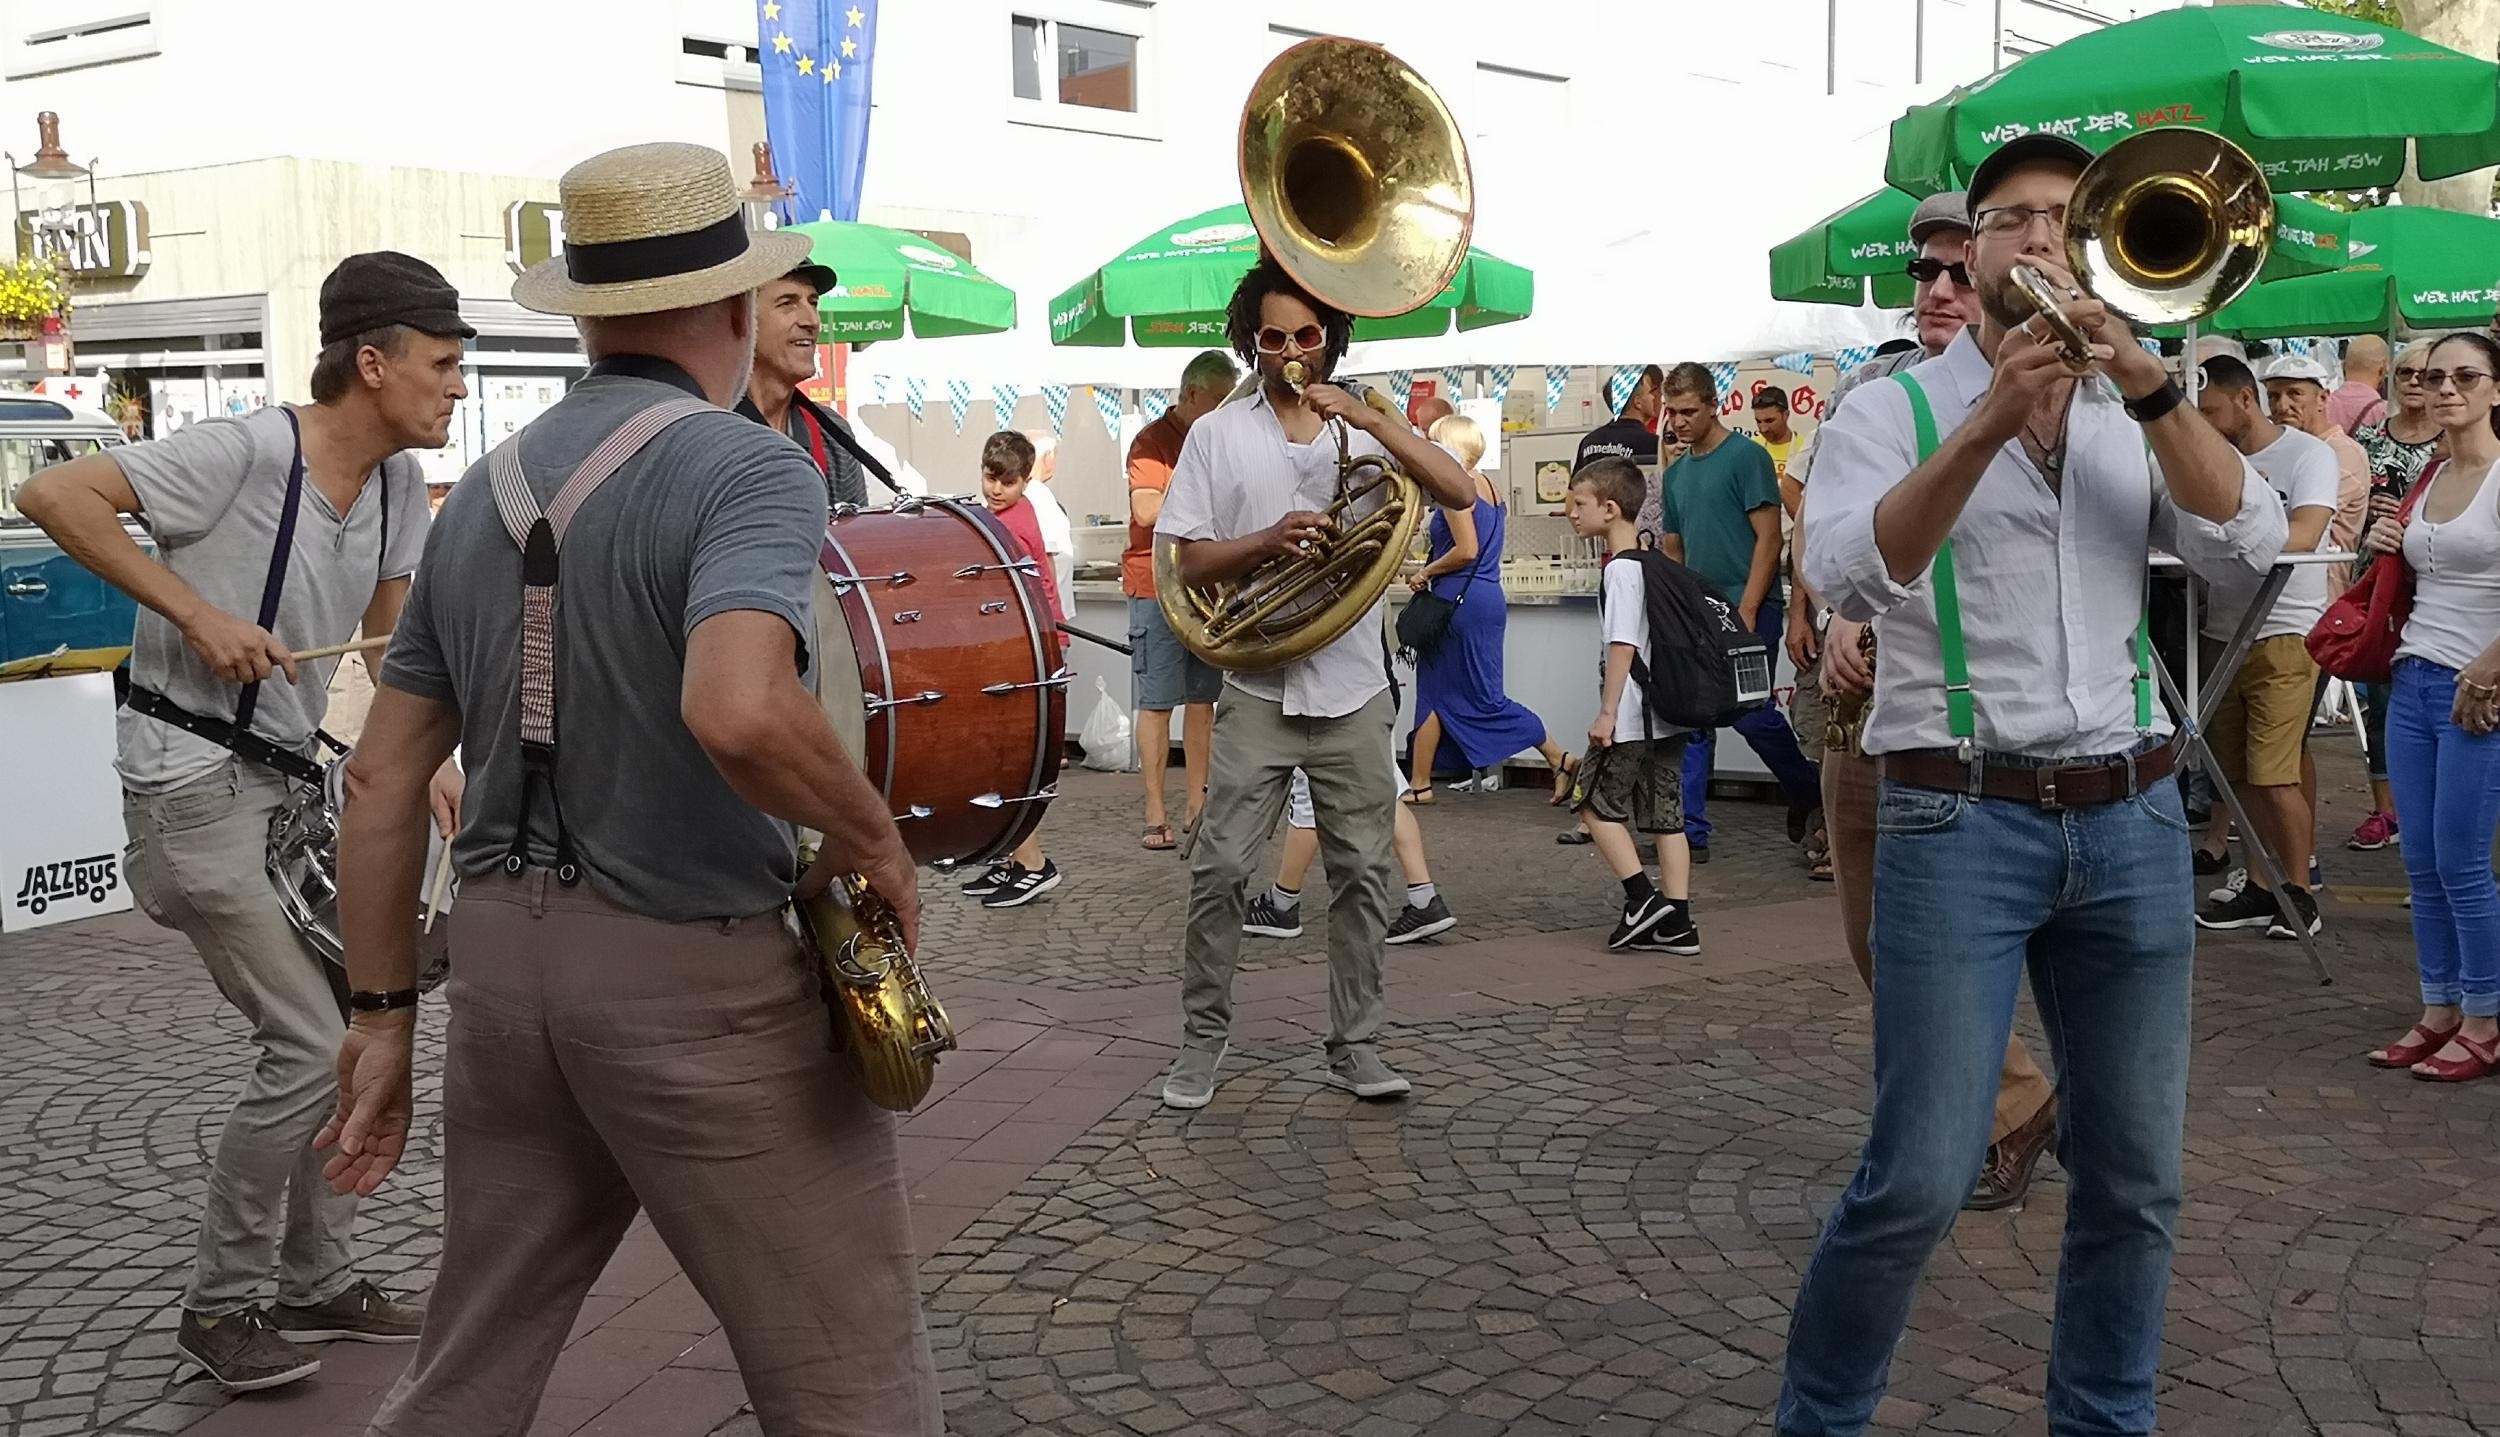 Des musiciens jouent sur la place du marché lors de la fête de la ville 